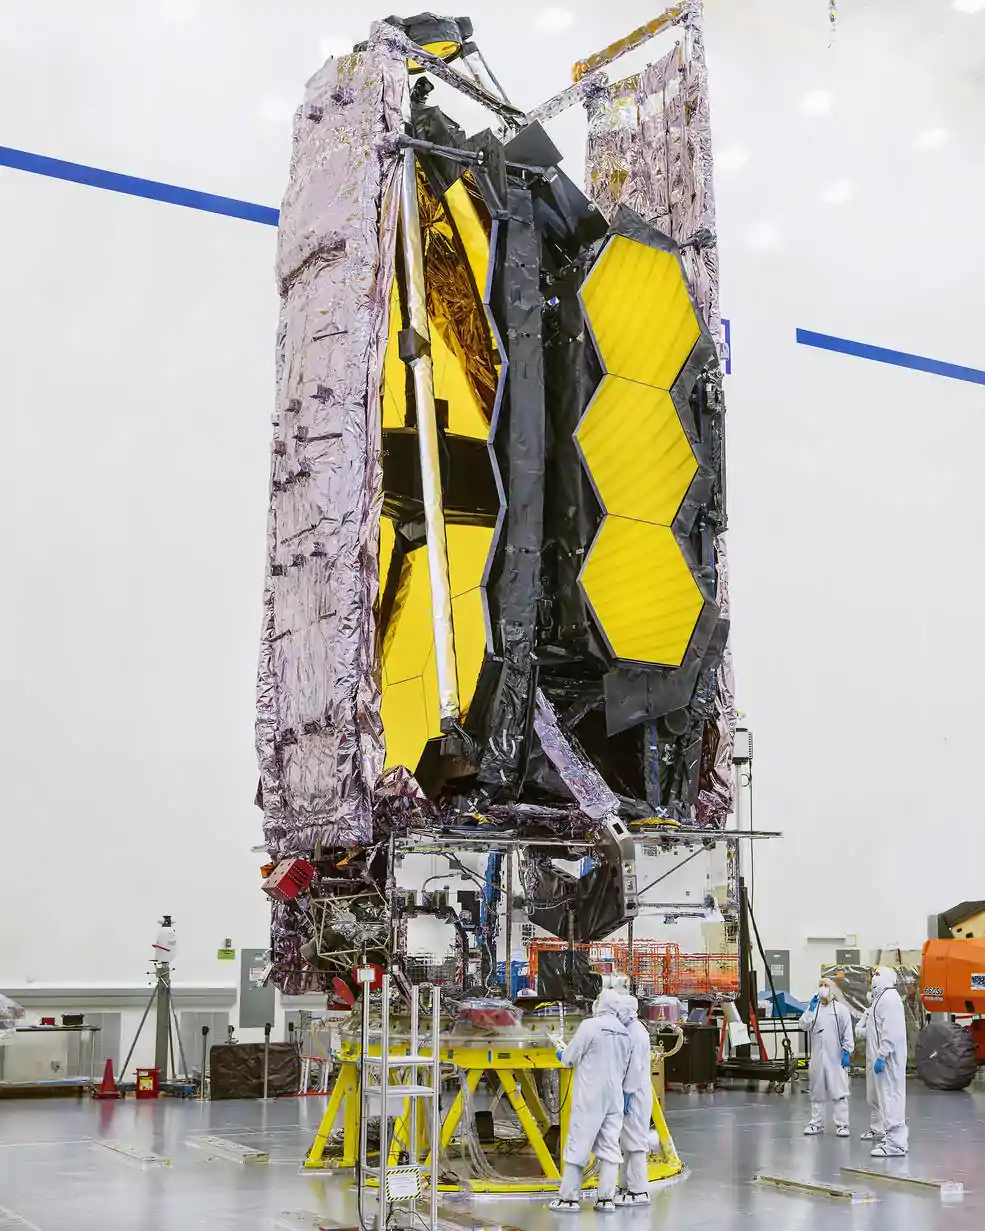 Foto do Telescópio Espacial James Webb da NASA sendo preparado para envio ao seu local de lançamento.